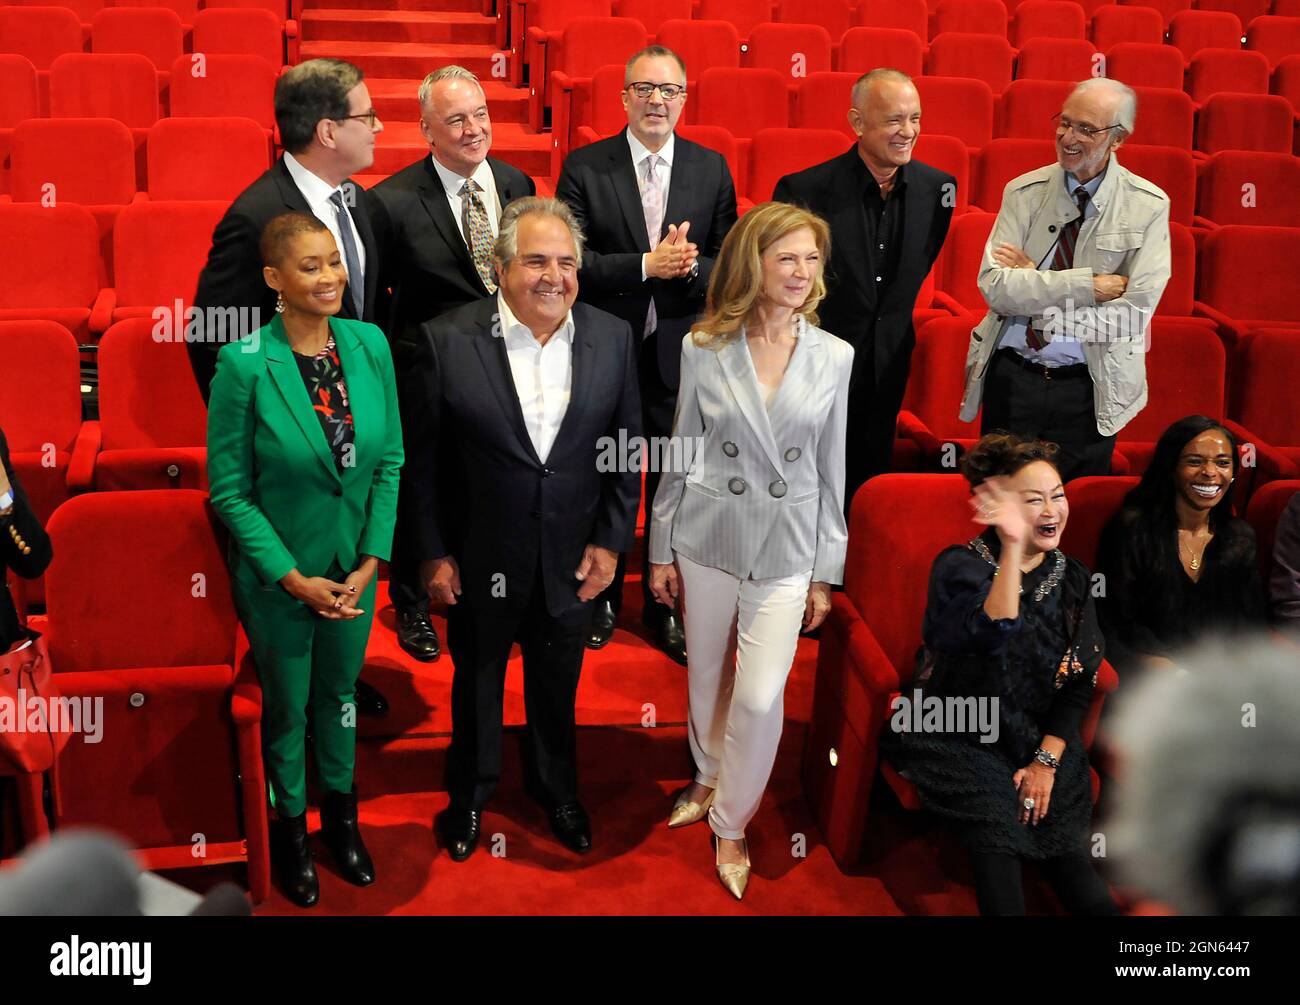 Führungsgruppe des Academy Museum of Motion Picturs, Los Angeles, Kalifornien, und Architekt Renzo Piano und Schauspieler Tom Hanks bei der Pressekonferenz. Stockfoto